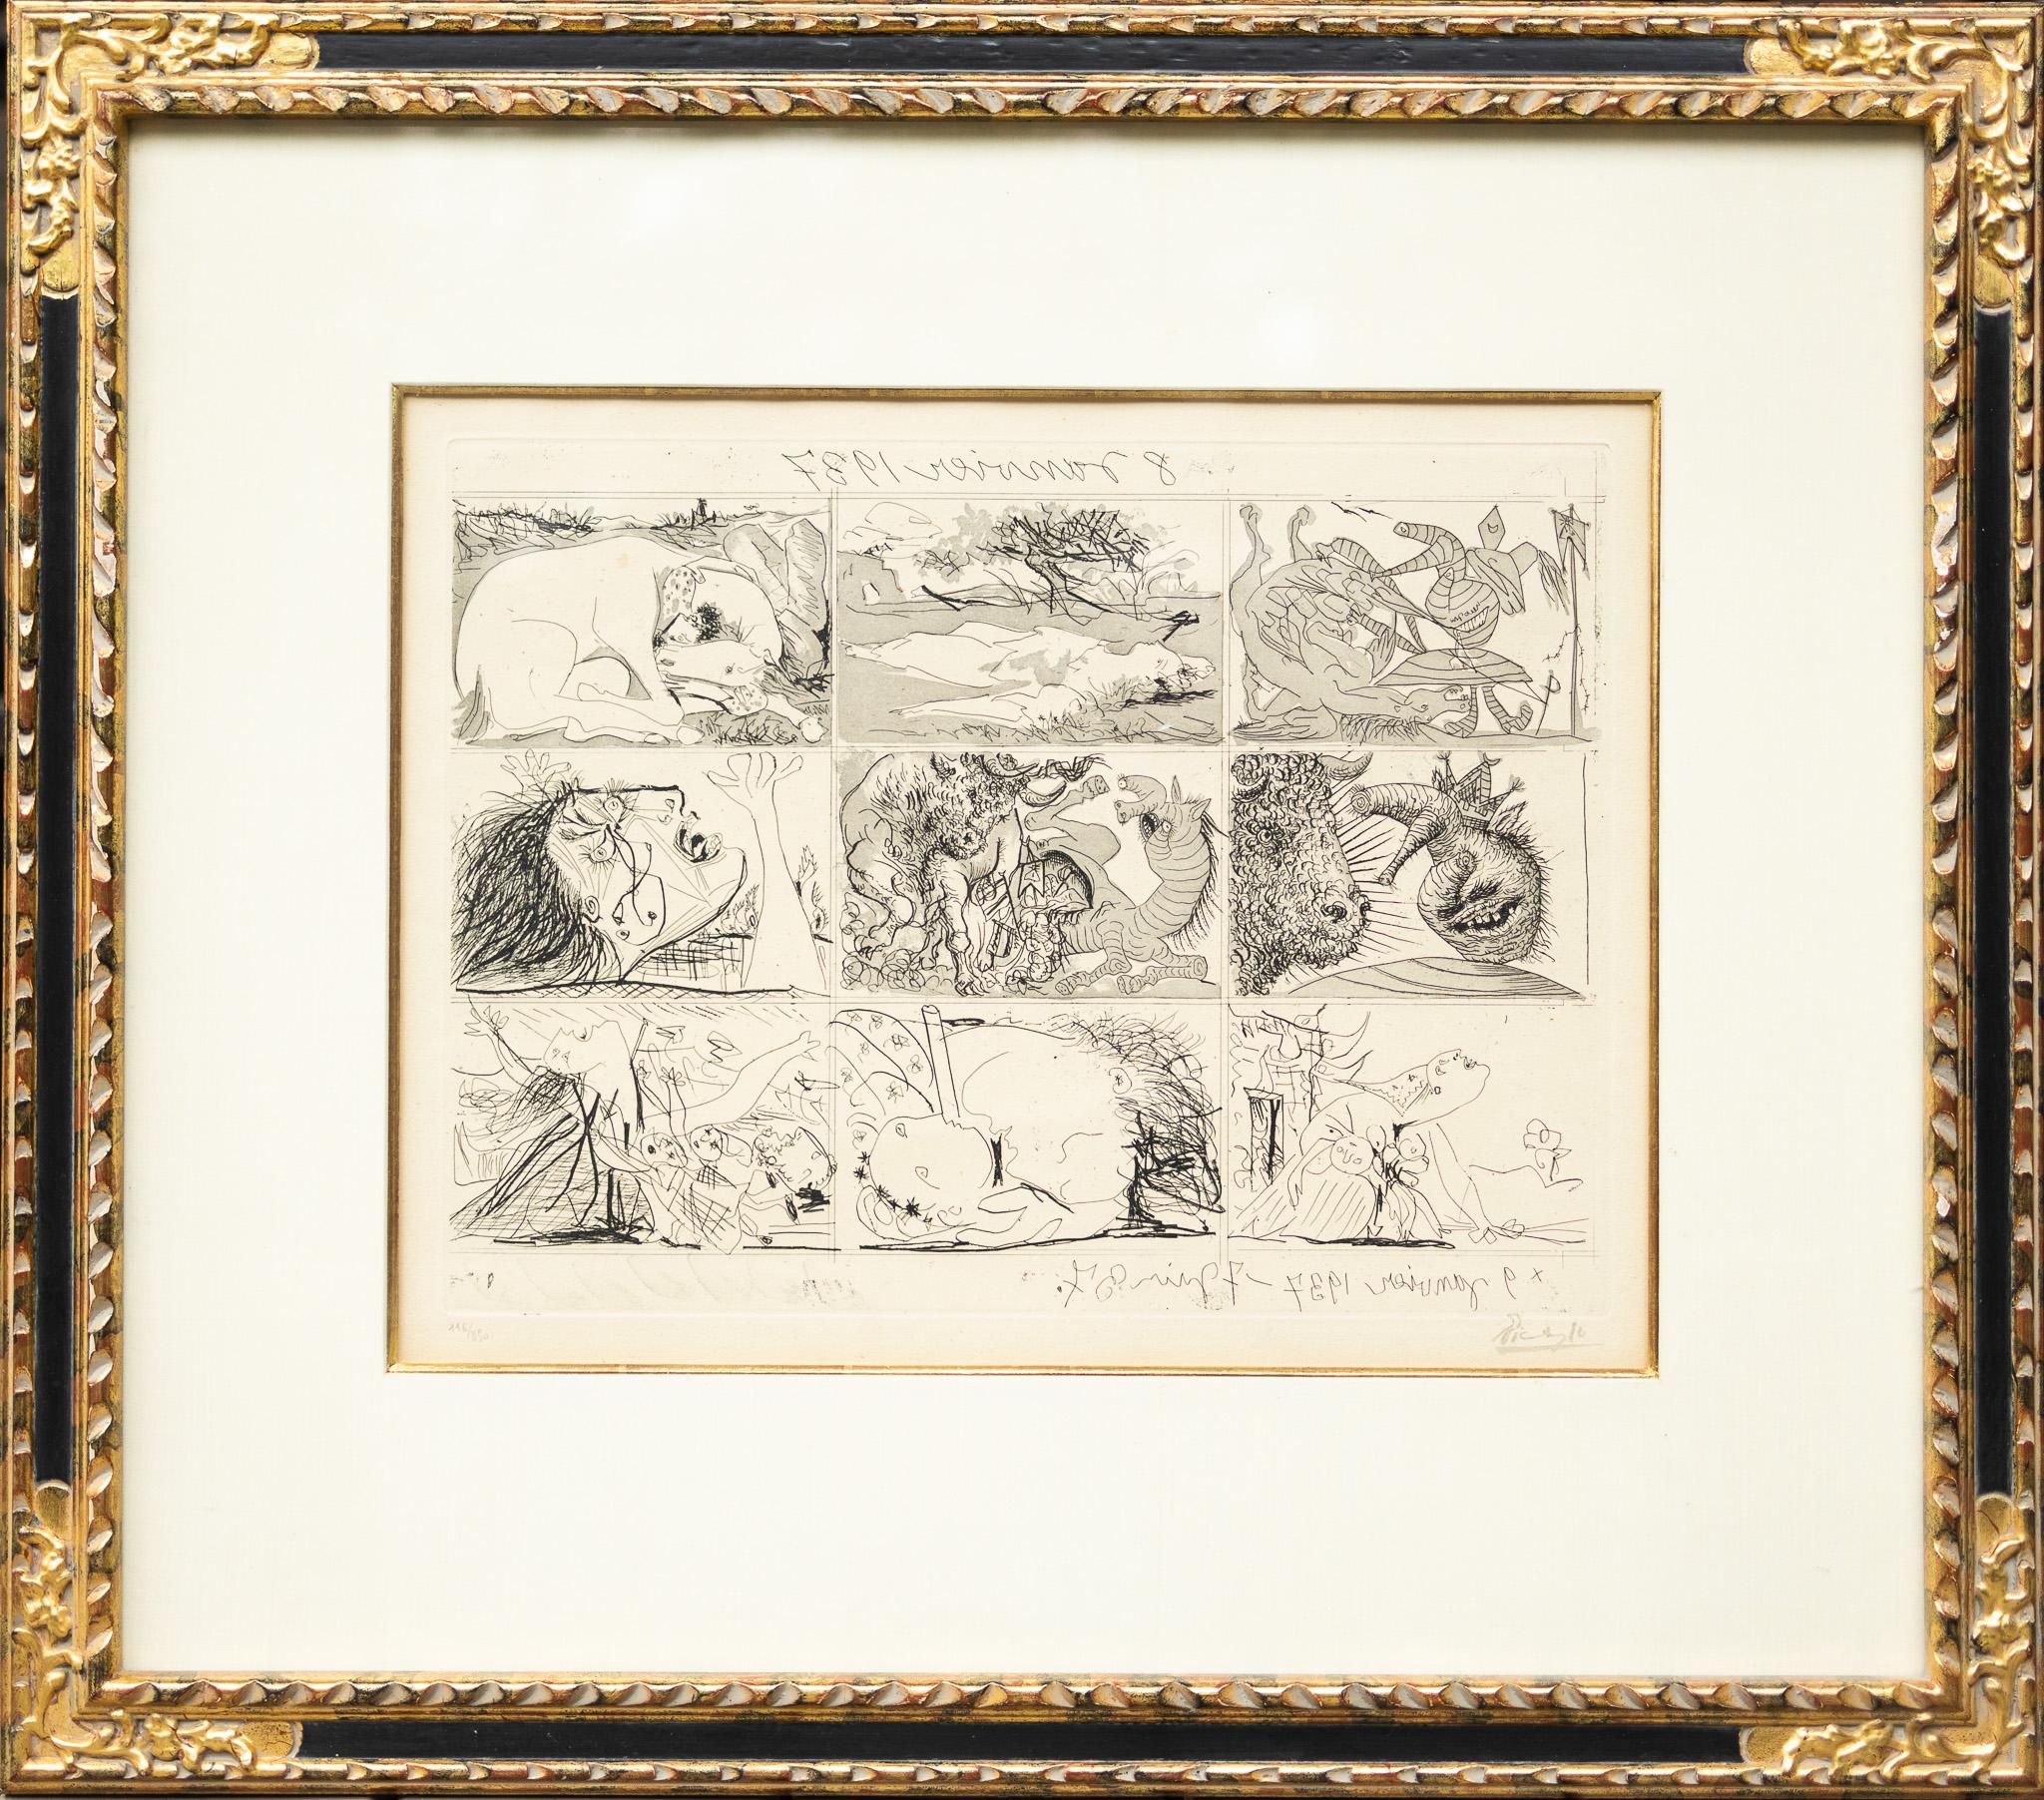 Von Pablo Picasso
Tiefdruckradierung Paar, Auflage 116/850, datiert 1937
Signiert und nummeriert mit Bleistift
Bildgröße jeweils 14